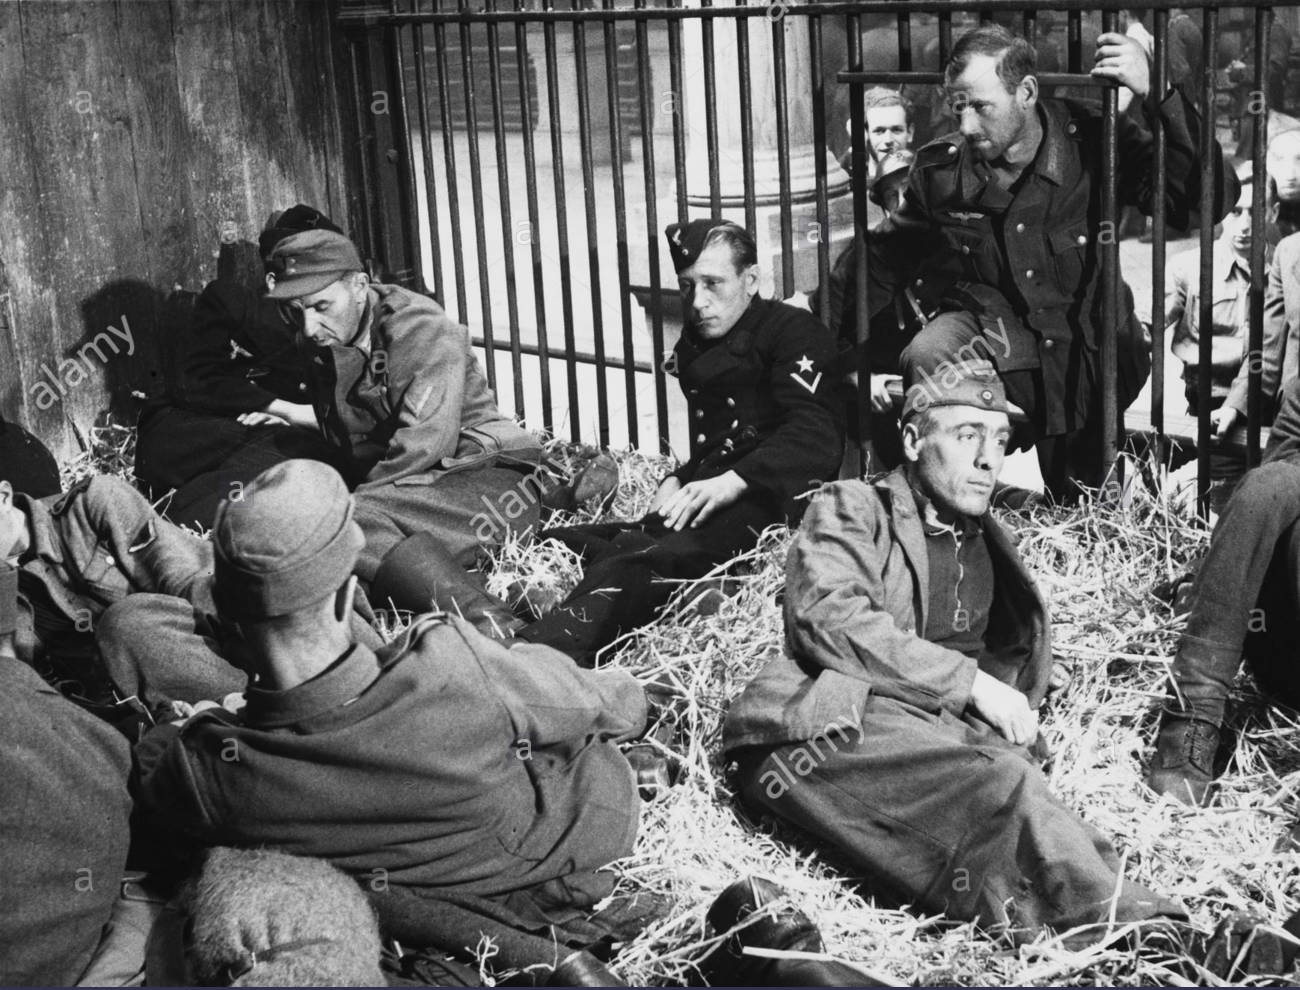 把德国战俘关动物园参观?二战末俘虏天堂的诸国如此对待德国人